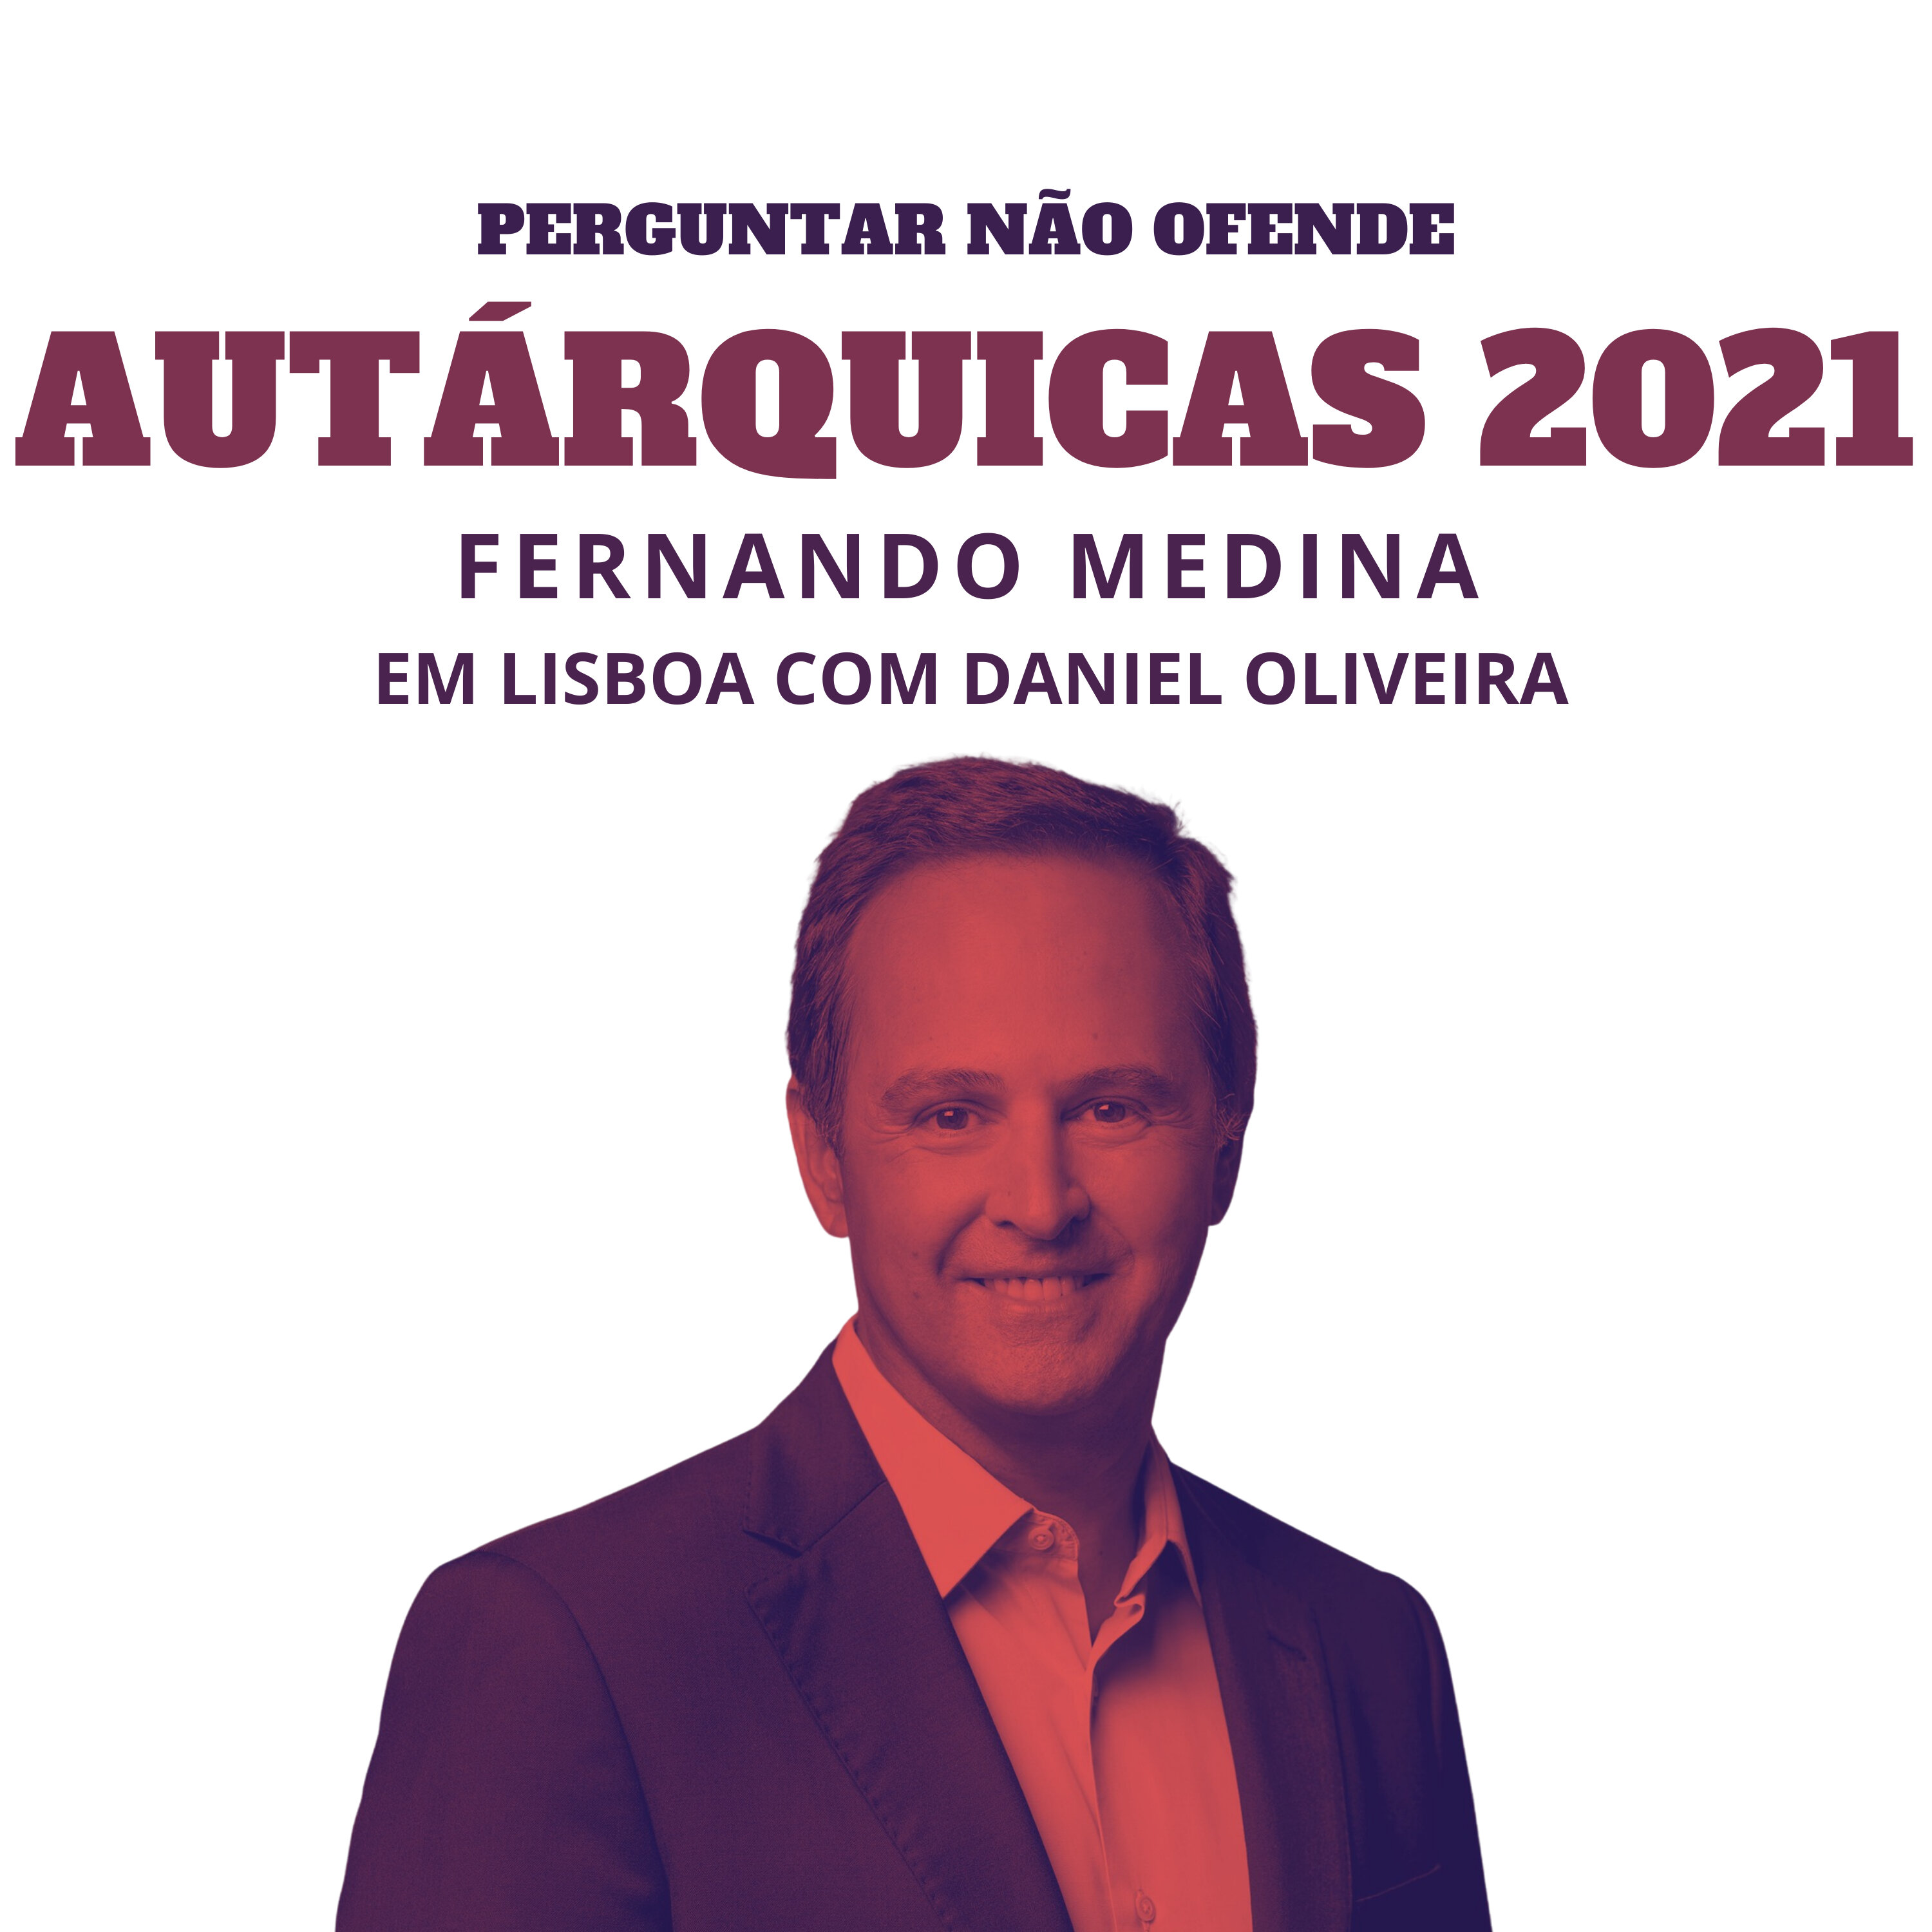 Autárquicas 2021: Fernando Medina conversa com Daniel Oliveira, em Lisboa